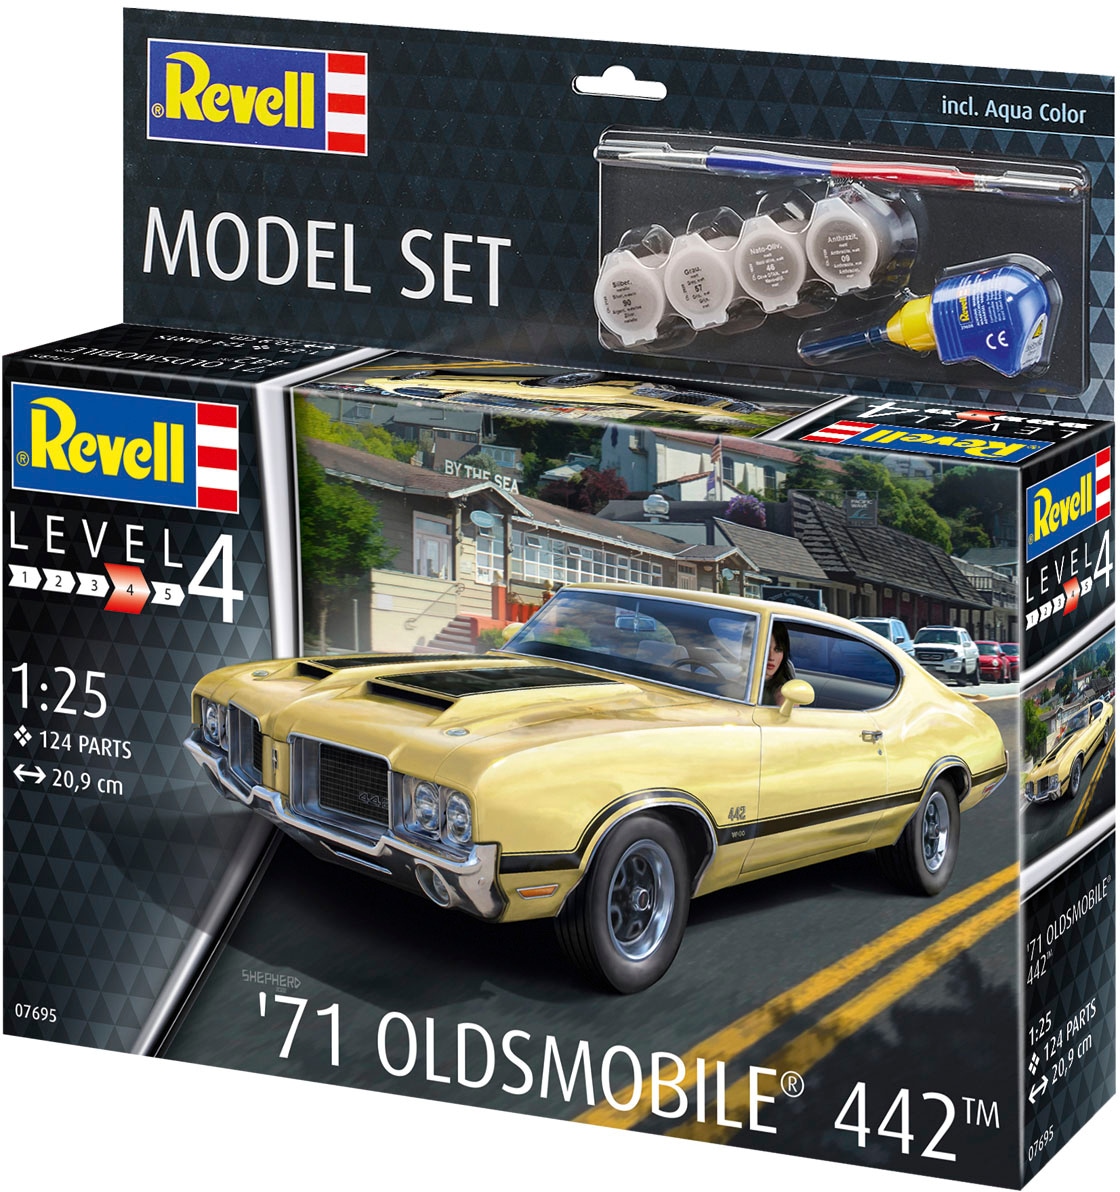 Revell® Modellbausatz »71 Oldsmobile® 442™«, 1:24